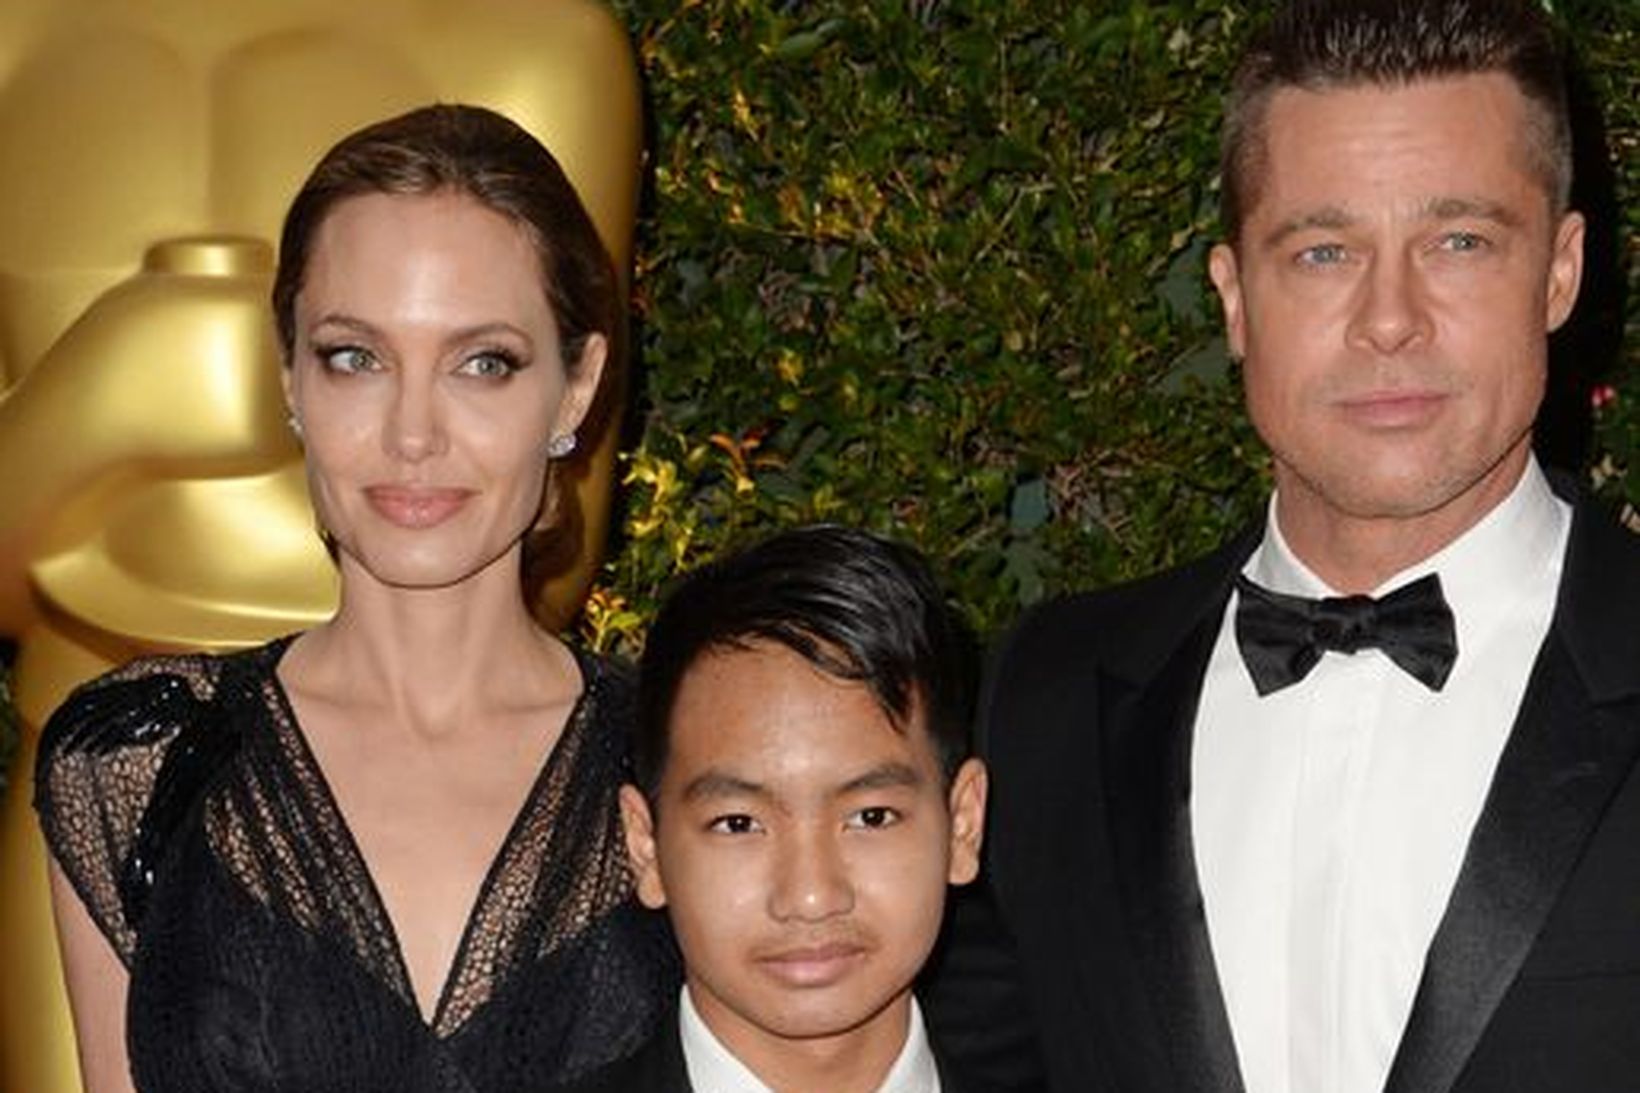 Maddox ásamt foreldrum sínum, Angelinu Jolie og Brad Pitt.